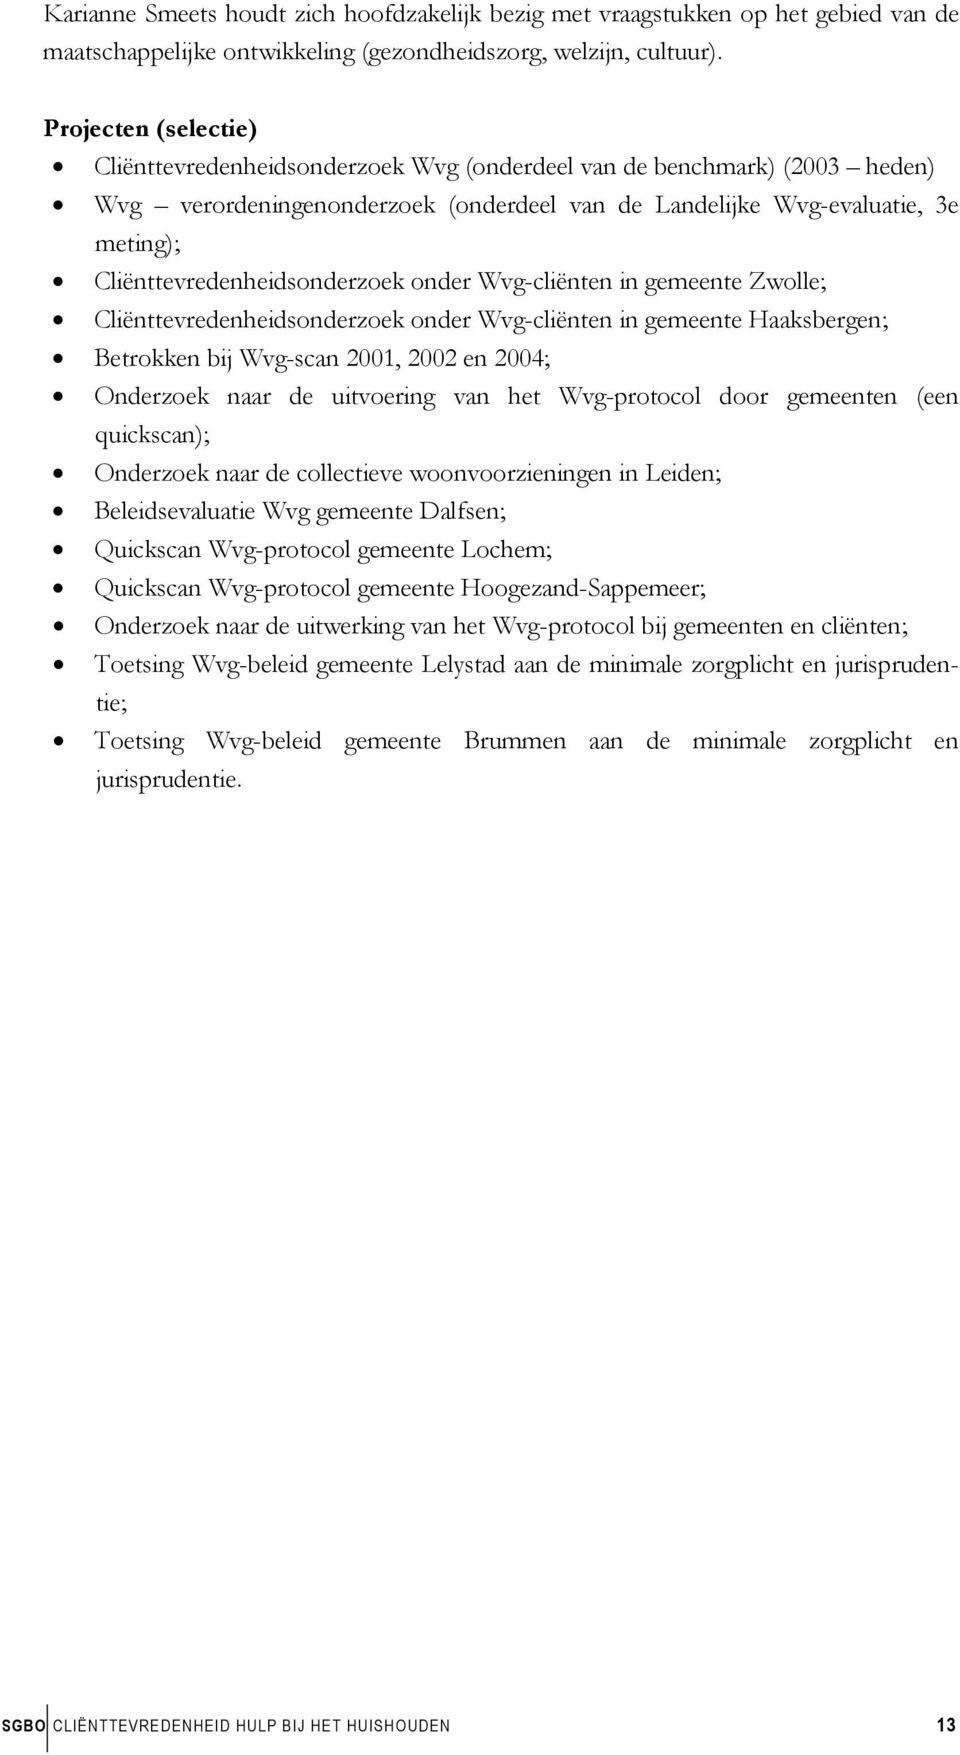 Cliënttevredenheidsonderzoek onder Wvg-cliënten in gemeente Zwolle; Cliënttevredenheidsonderzoek onder Wvg-cliënten in gemeente Haaksbergen; Betrokken bij Wvg-scan 2001, 2002 en 2004; Onderzoek naar